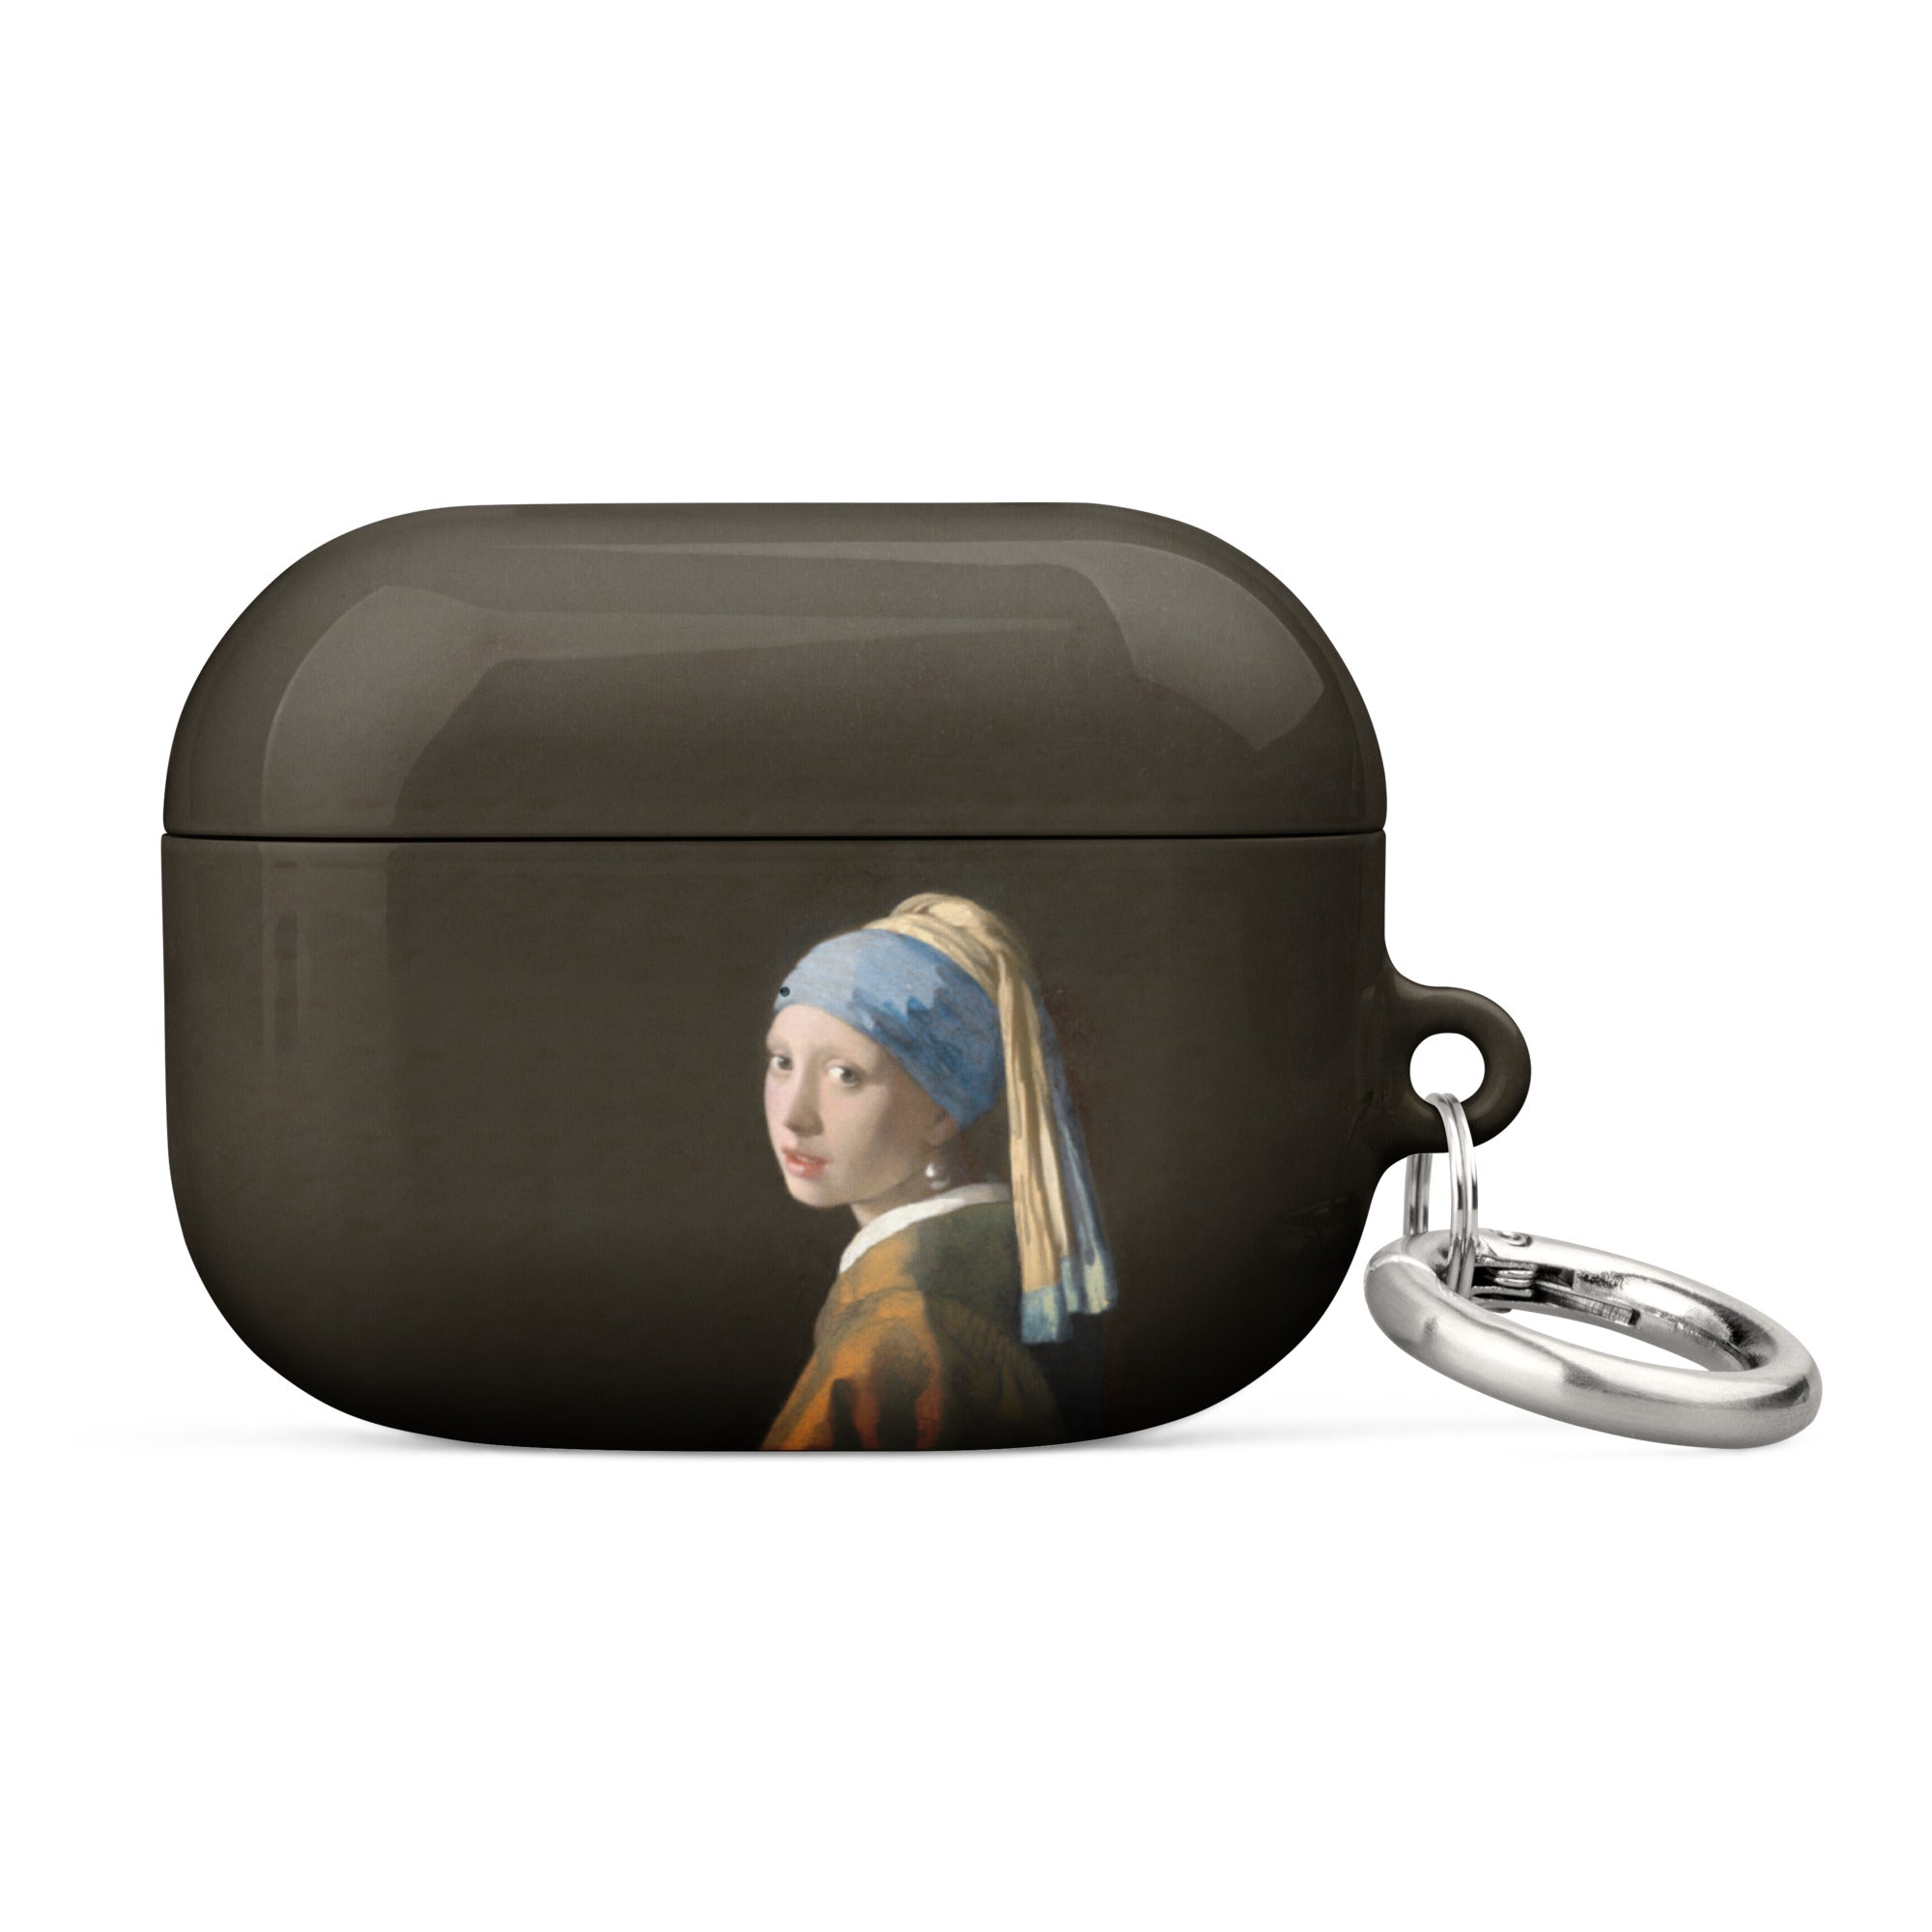 Johannes Vermeer „Mädchen mit dem Perlenohrring“ Berühmtes Gemälde AirPods®-Hülle | Premium-Kunsthülle für AirPods®